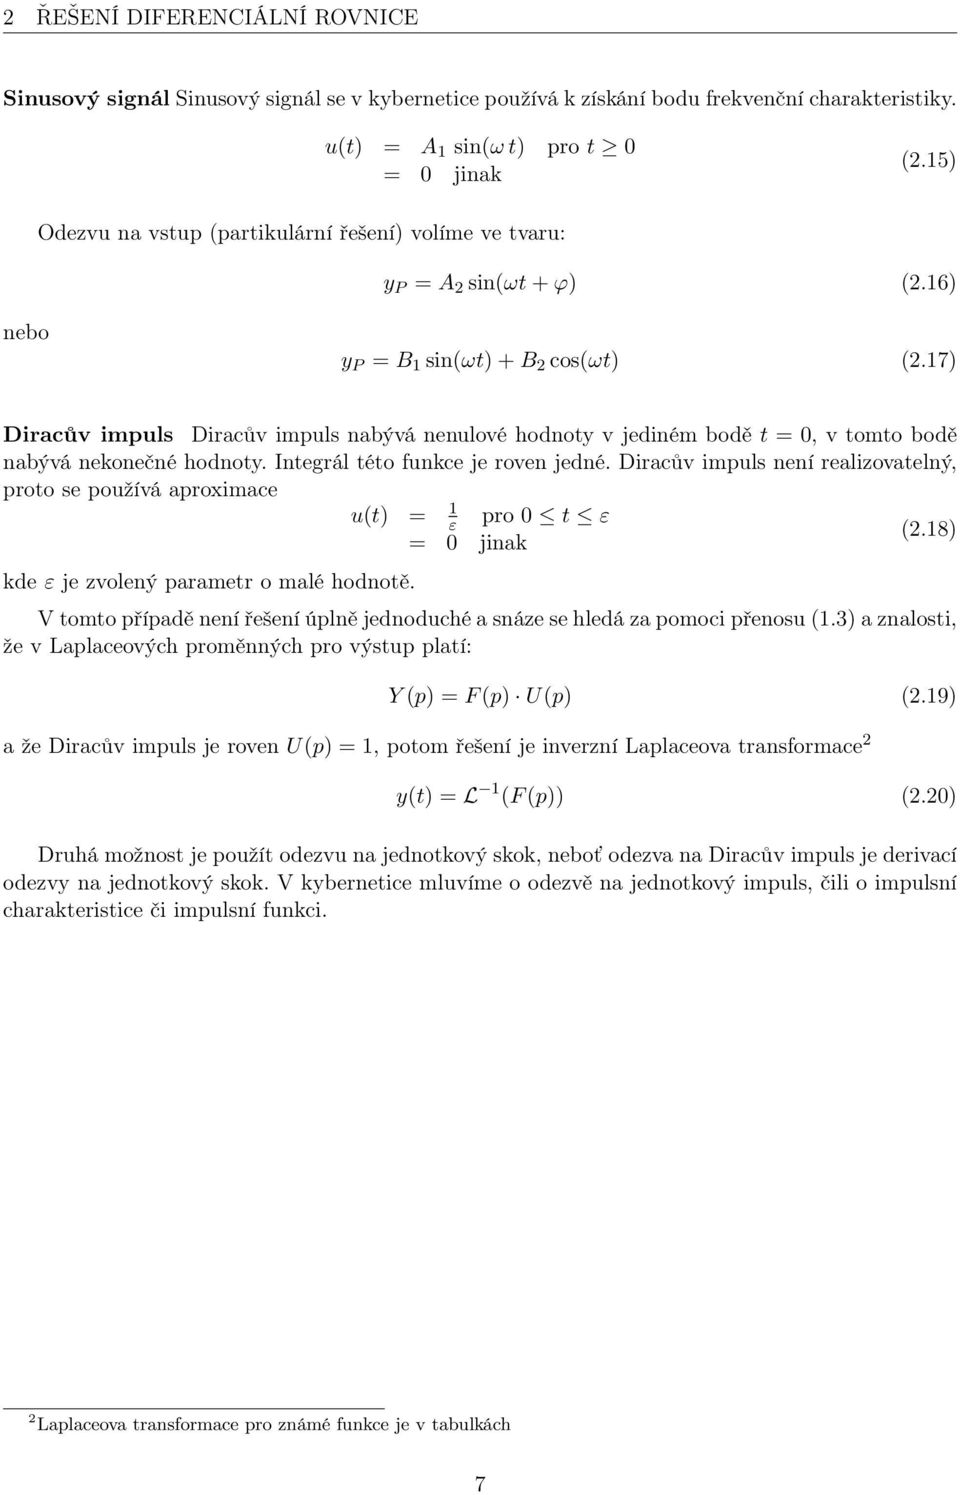 17) Diracův impuls Diracův impuls nabývá nenulové hodnoty v jediném bodě t = 0, v tomto bodě nabývá nekonečné hodnoty. Integrál této funkce je roven jedné.